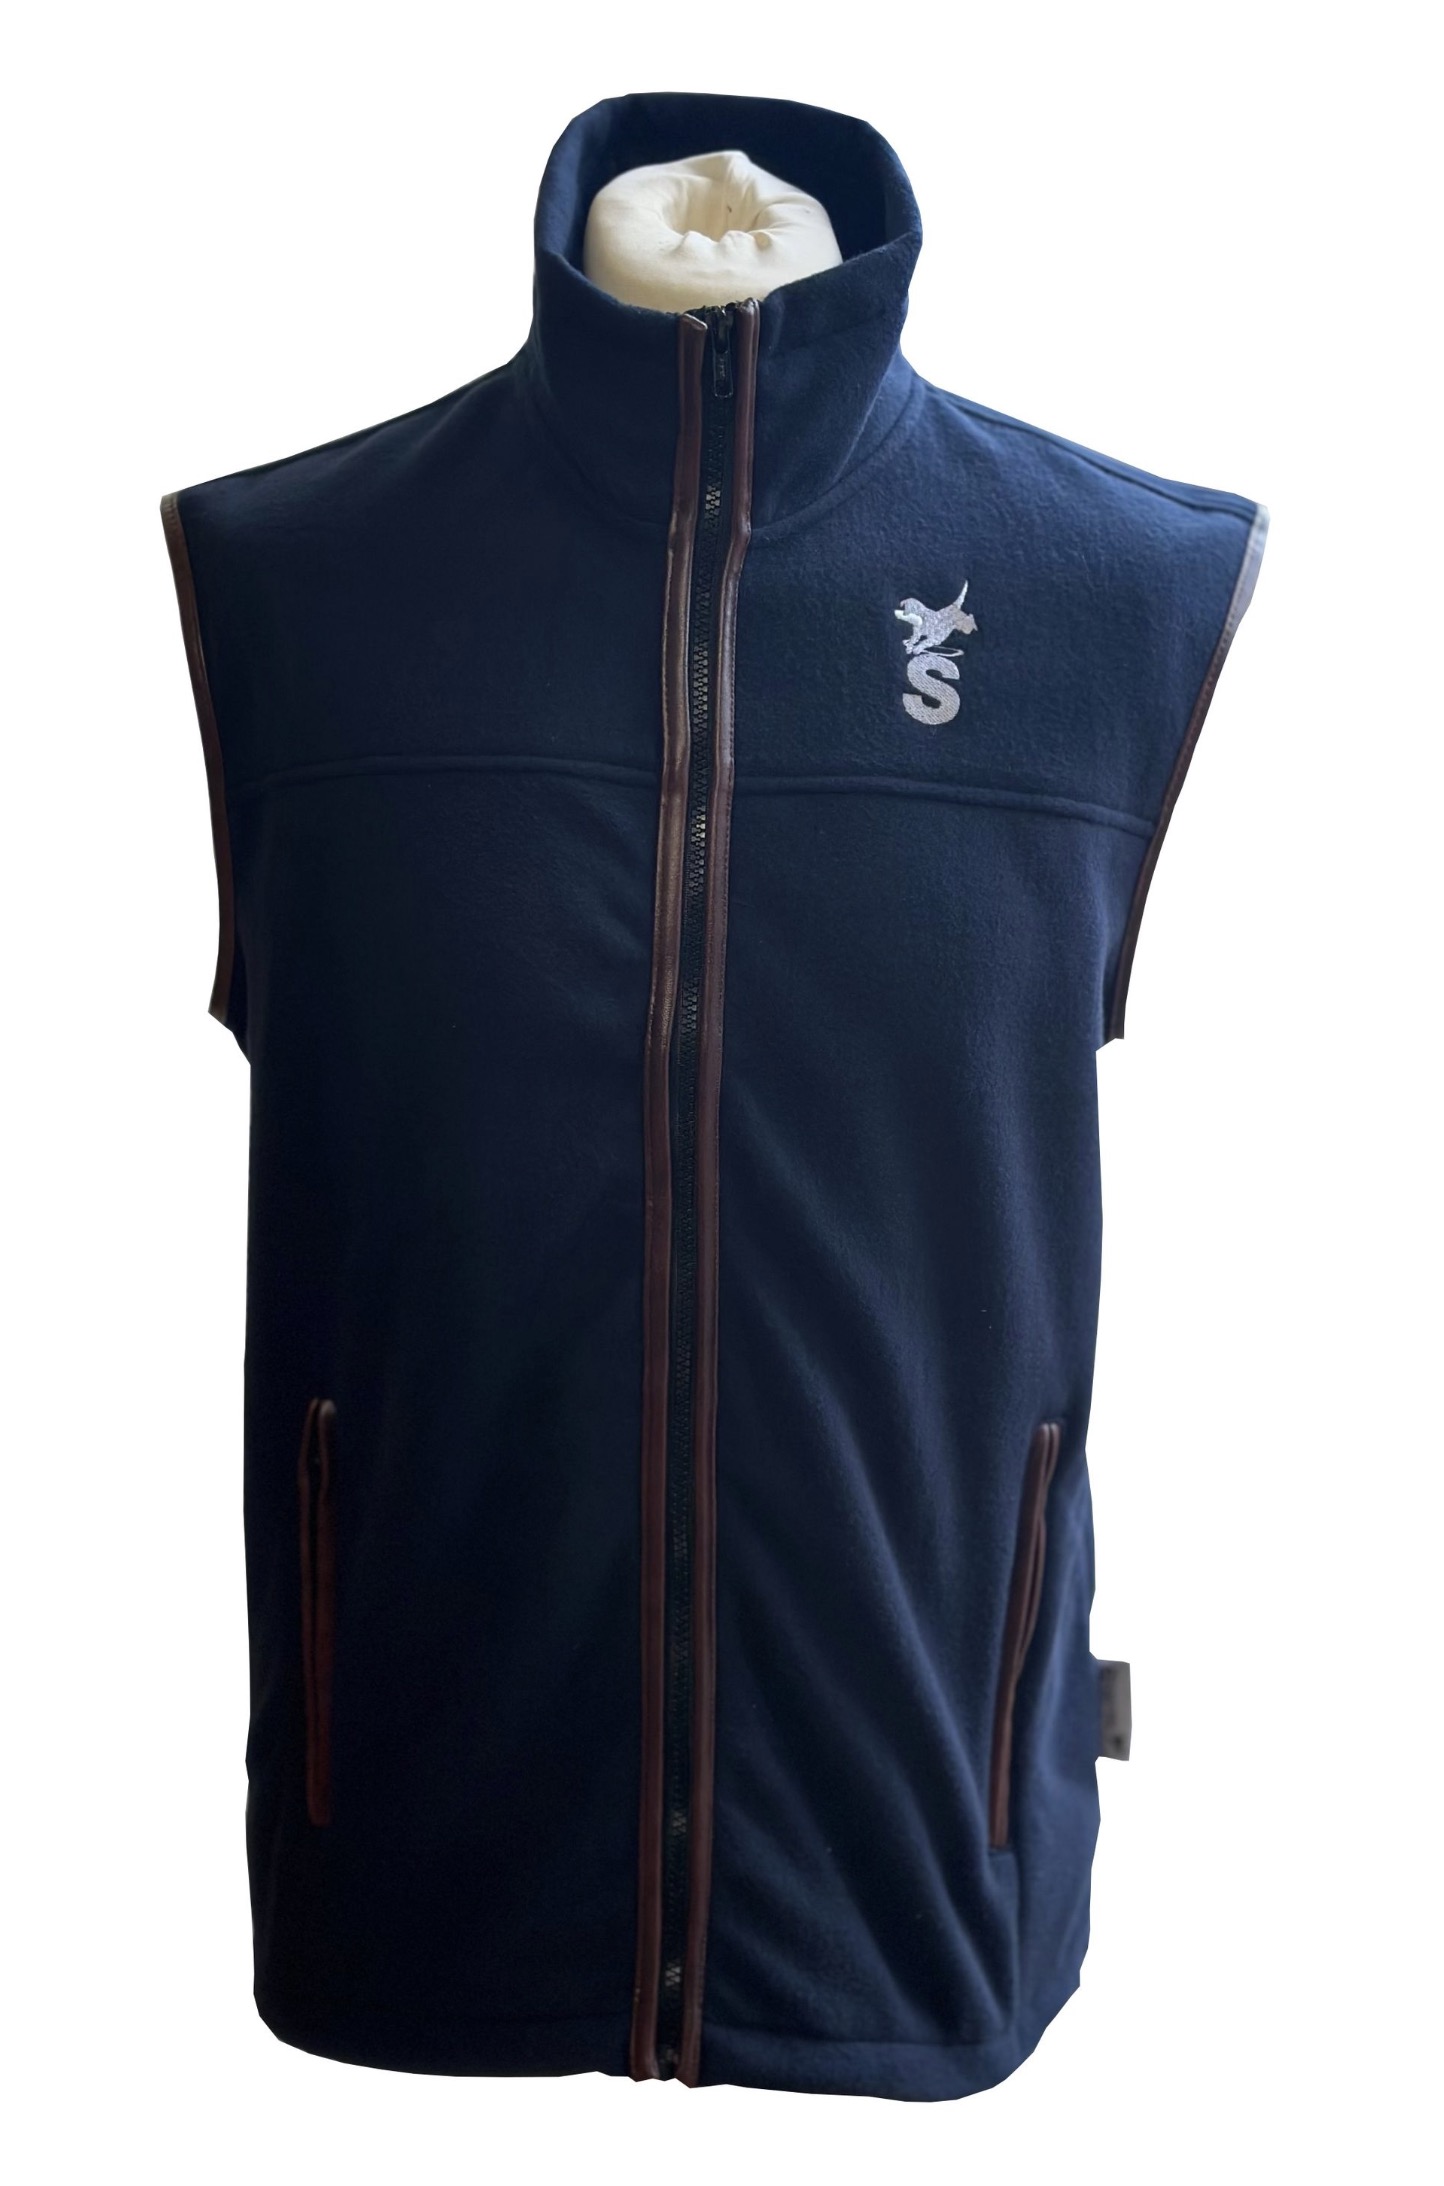 Sporting Fleece vest herre - Navy Blue (Medium)